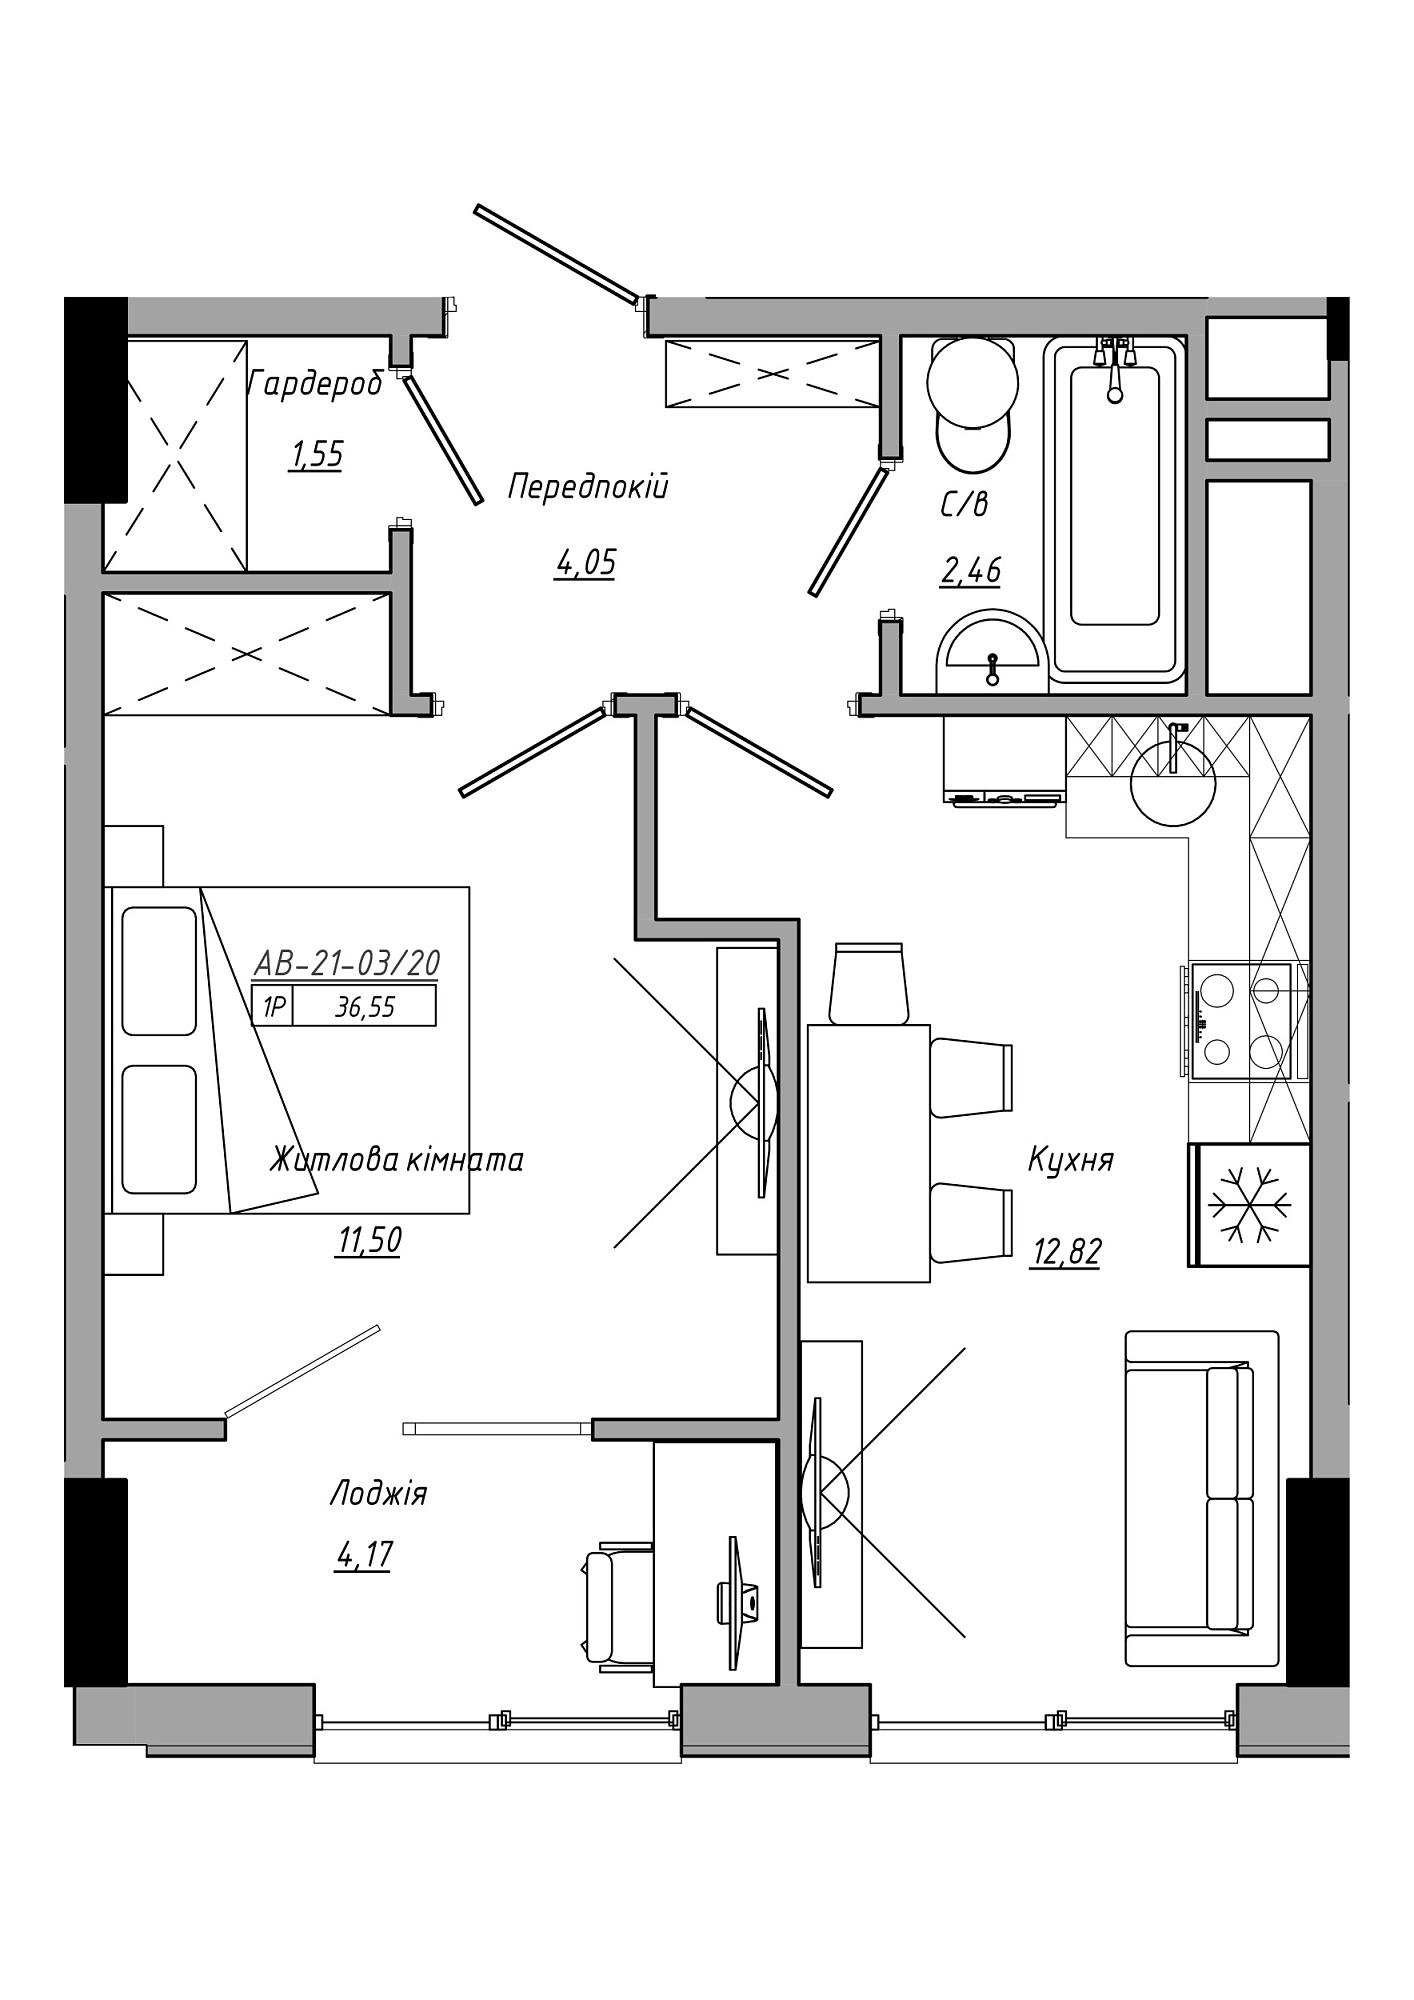 Планировка 1-к квартира площей 36.55м2, AB-21-03/00020.